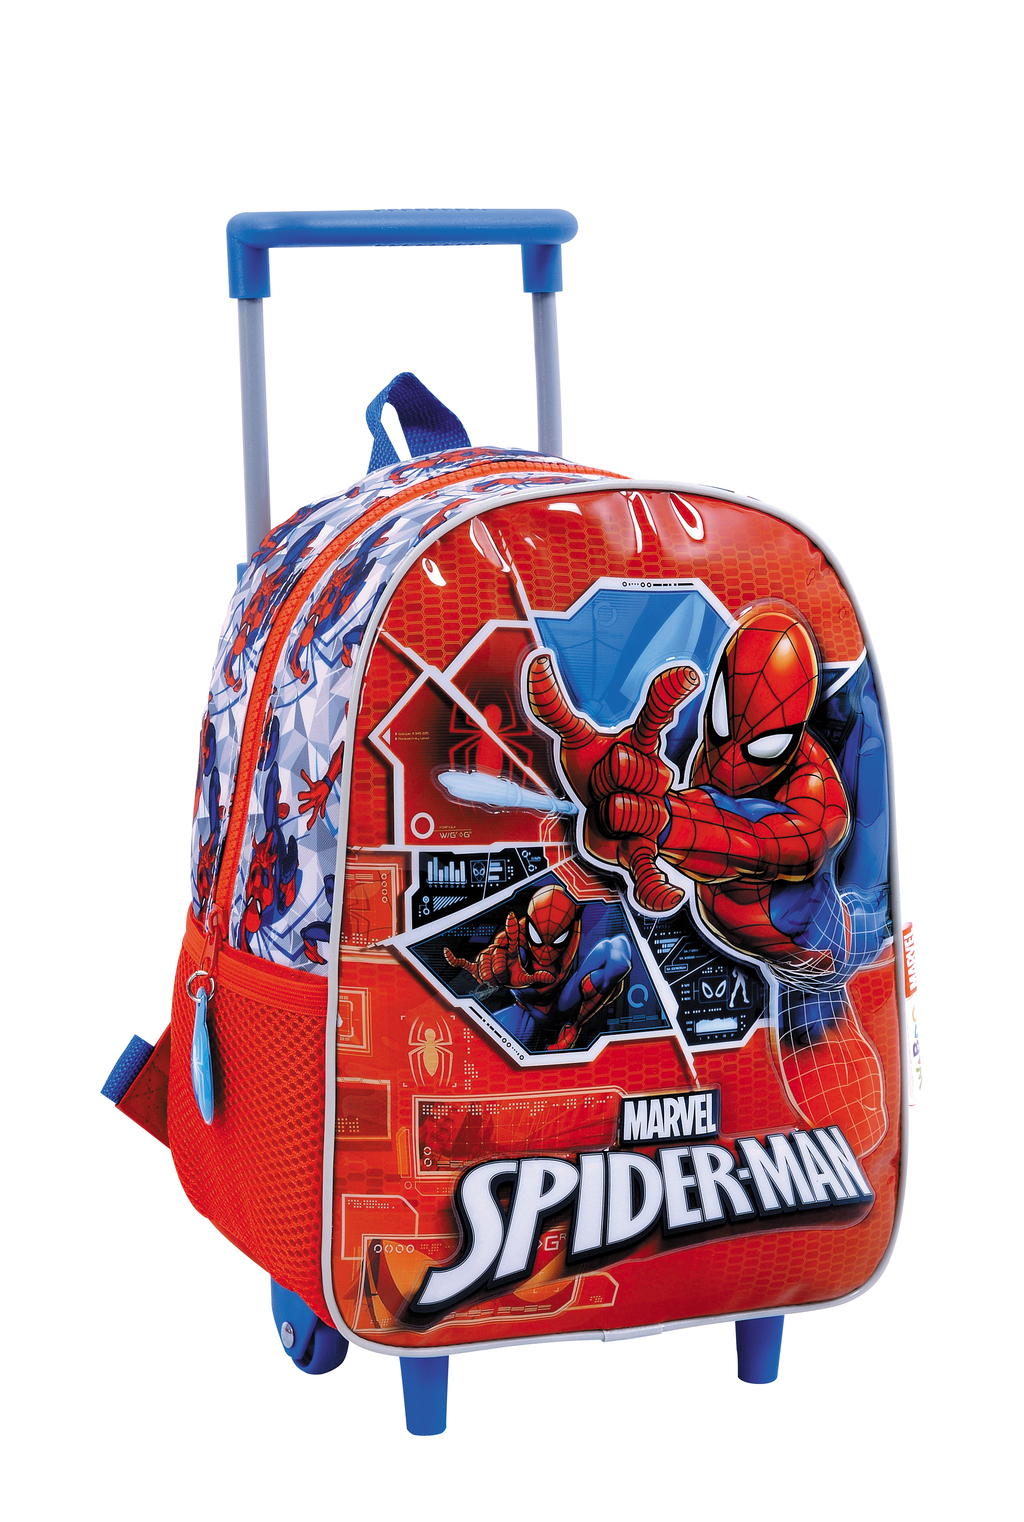 Comprar mochila con carro de Spiderman en La Casita de Daniela